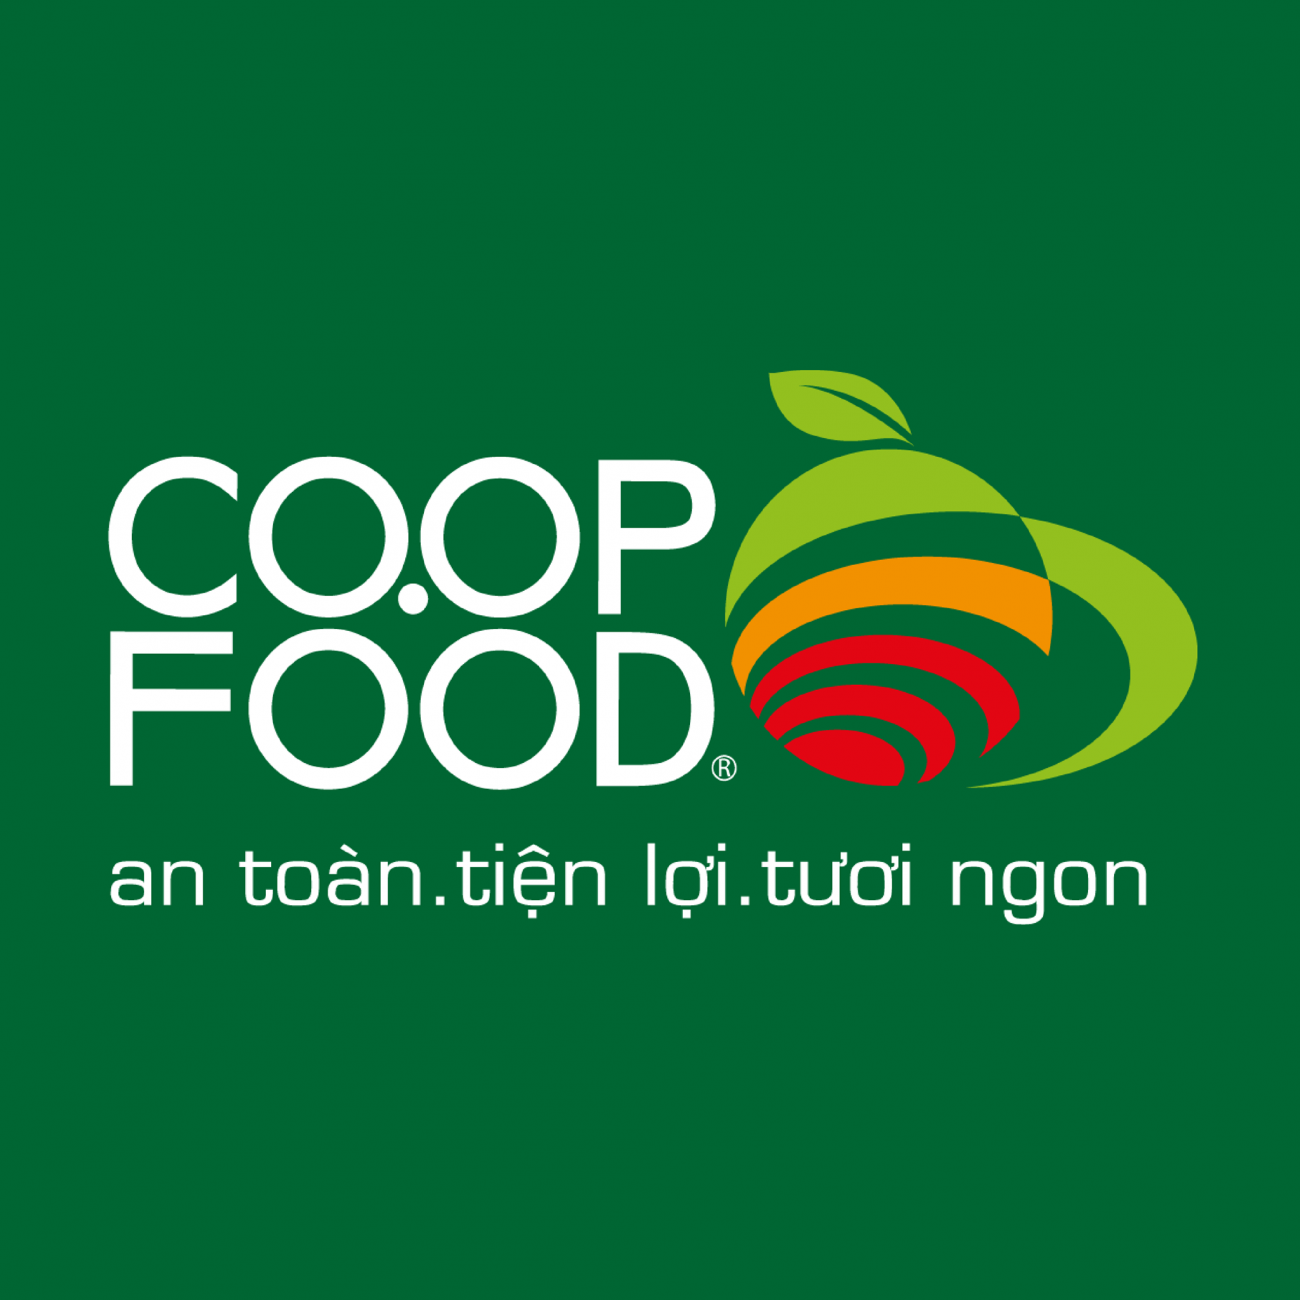 Cửa hàng thực phẩm Co.op Food